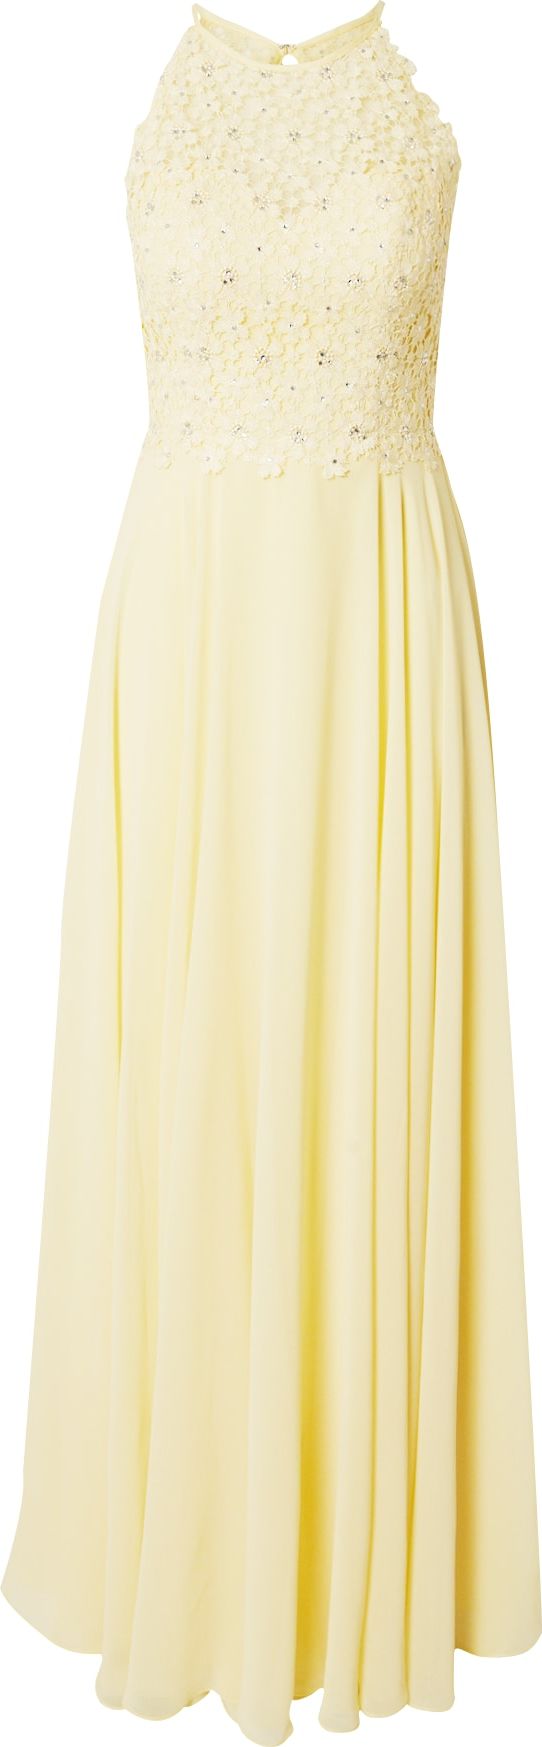 LUXUAR Společenské šaty pastelově žlutá